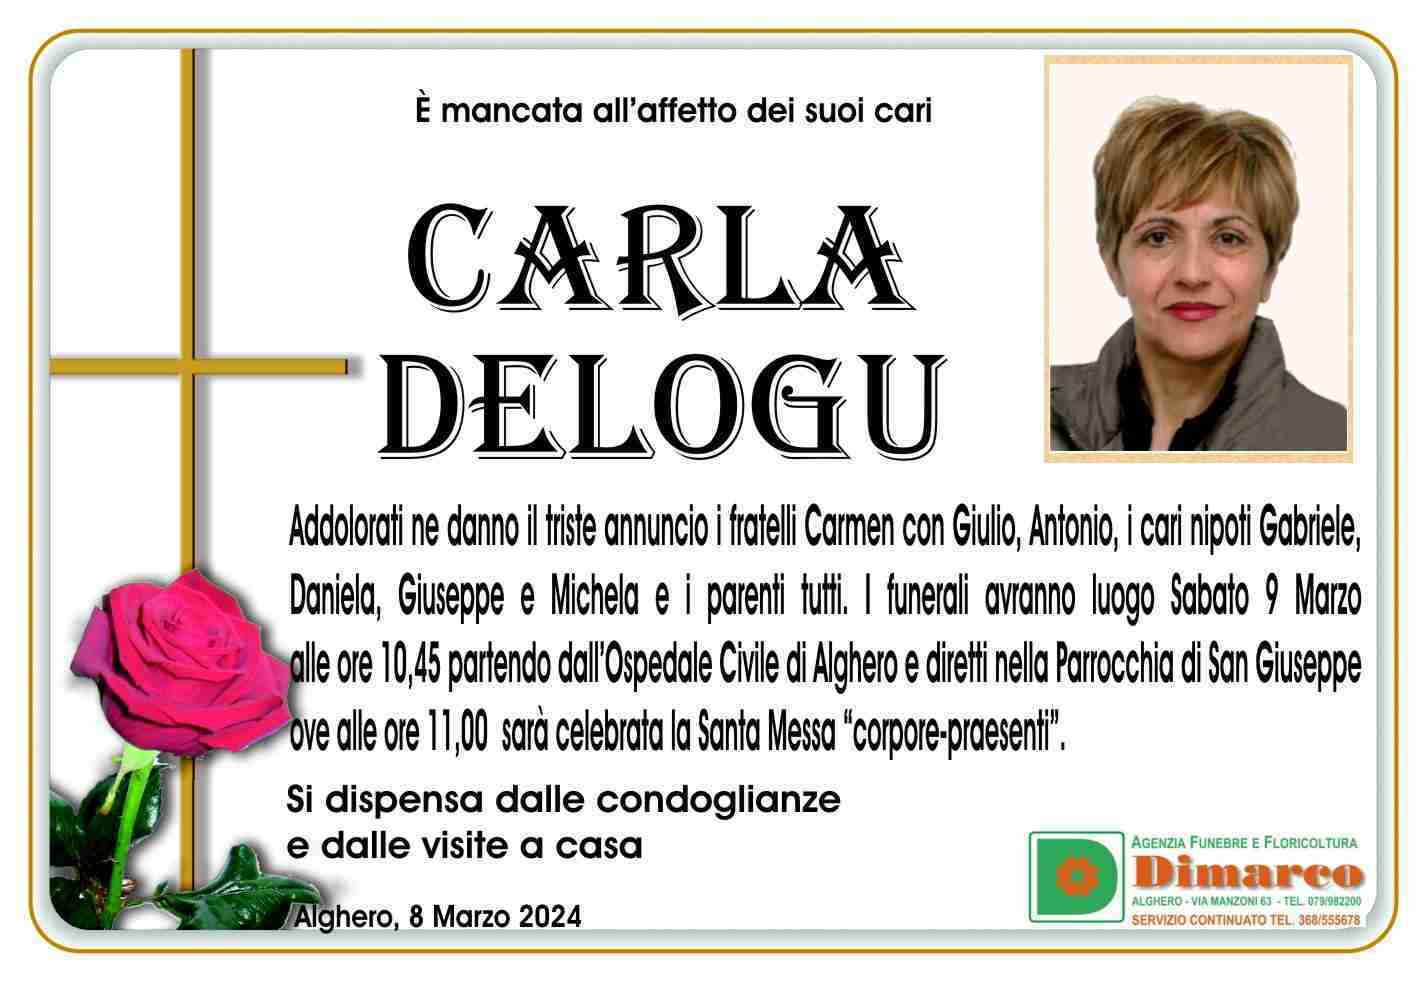 Carla Delogu